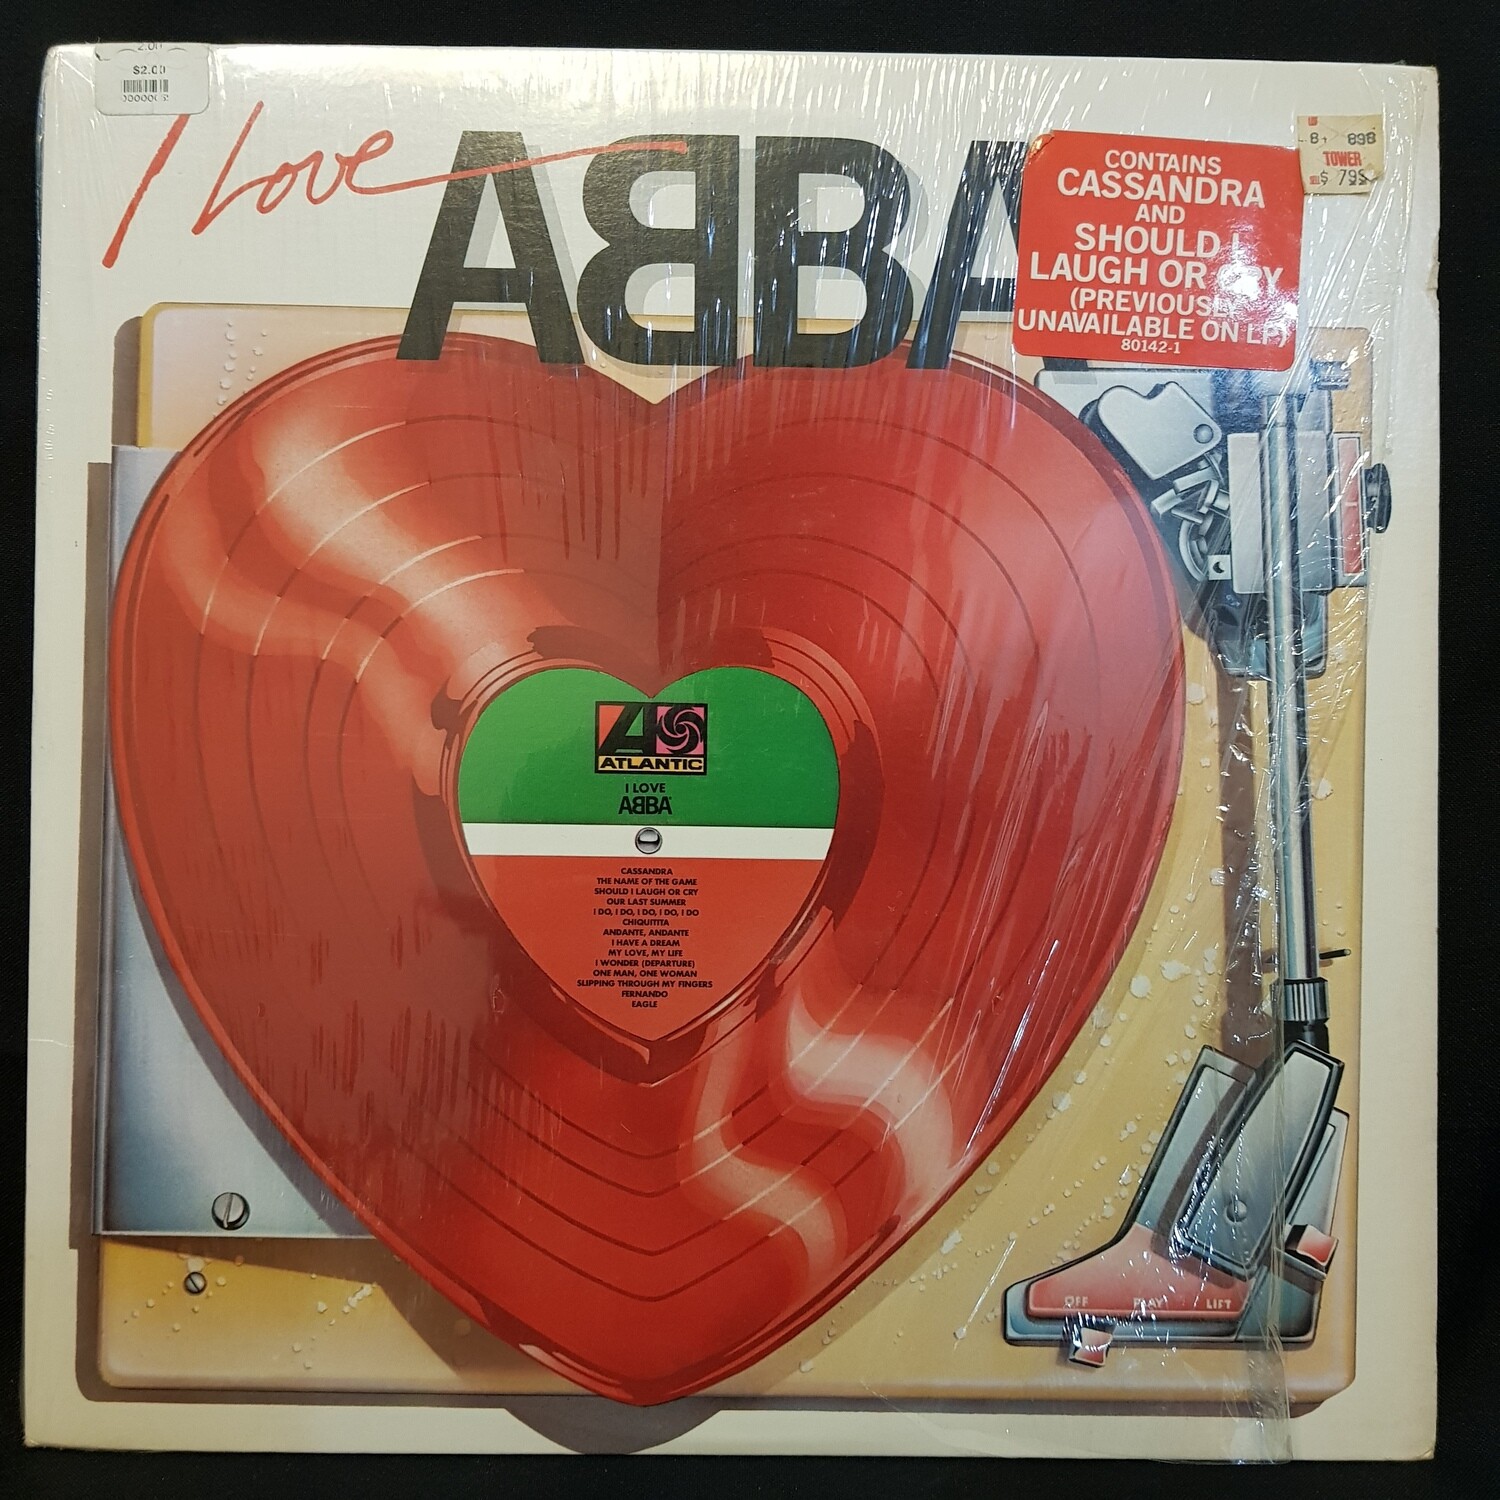 ABBA- I Love Abba